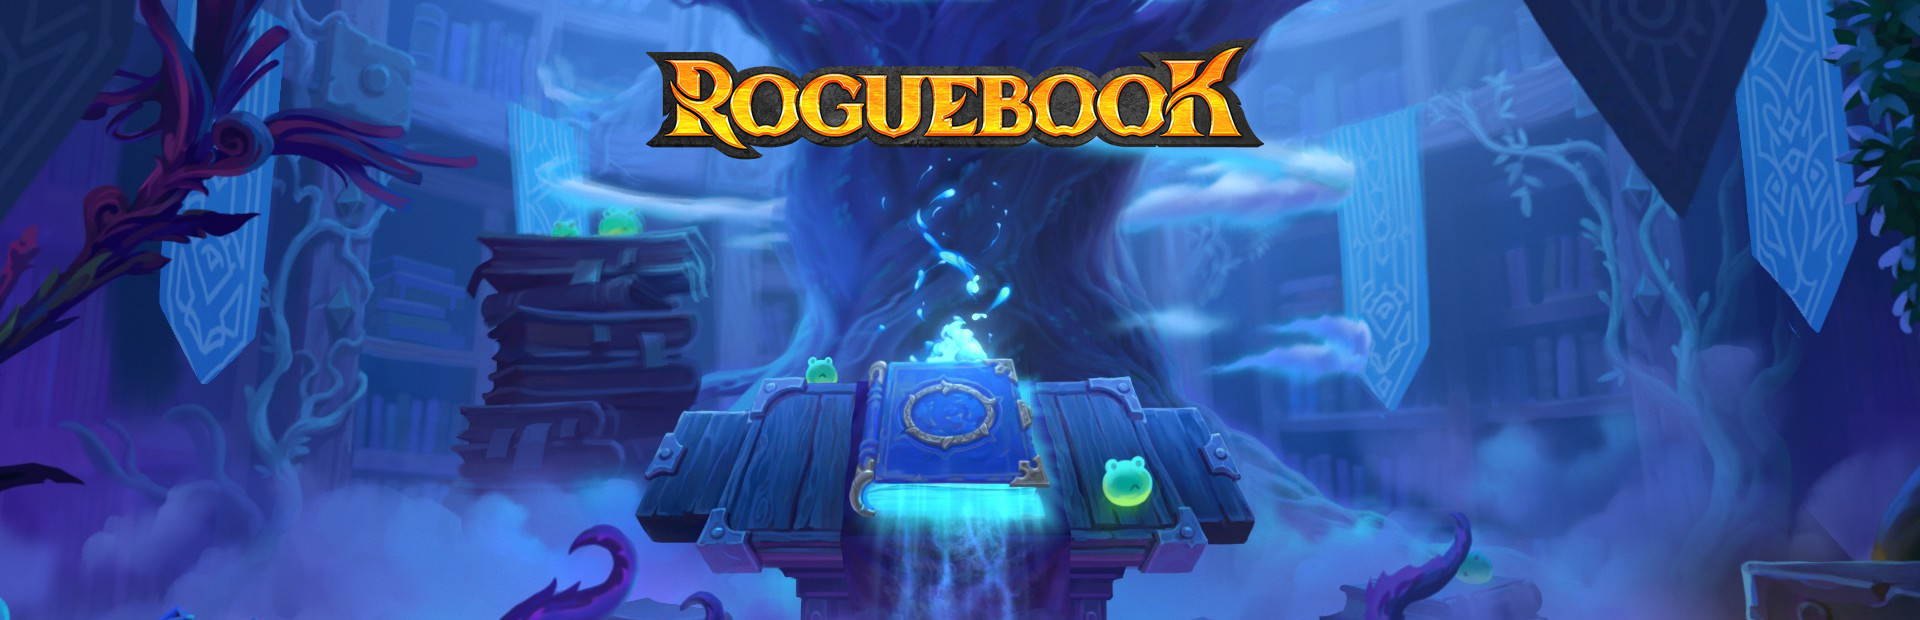 دانلود بازی Roguebook برای پی سی | گیمباتو